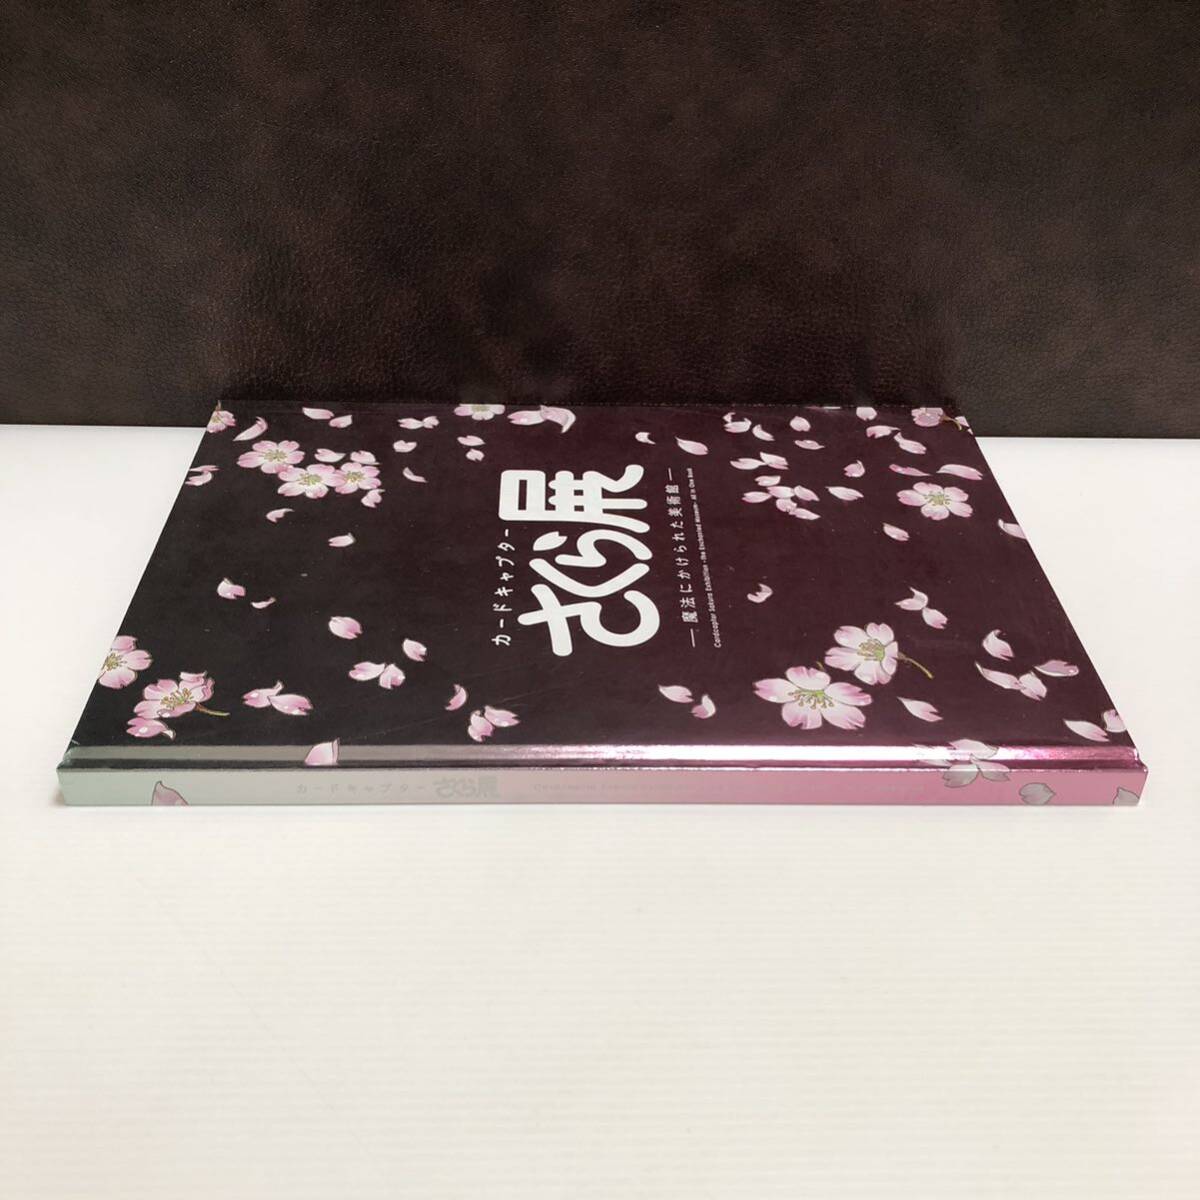 m278-0365-8 [ нераспечатанный товар ] Cardcaptor Sakura выставка магия ...... картинная галерея все в одном книжка 